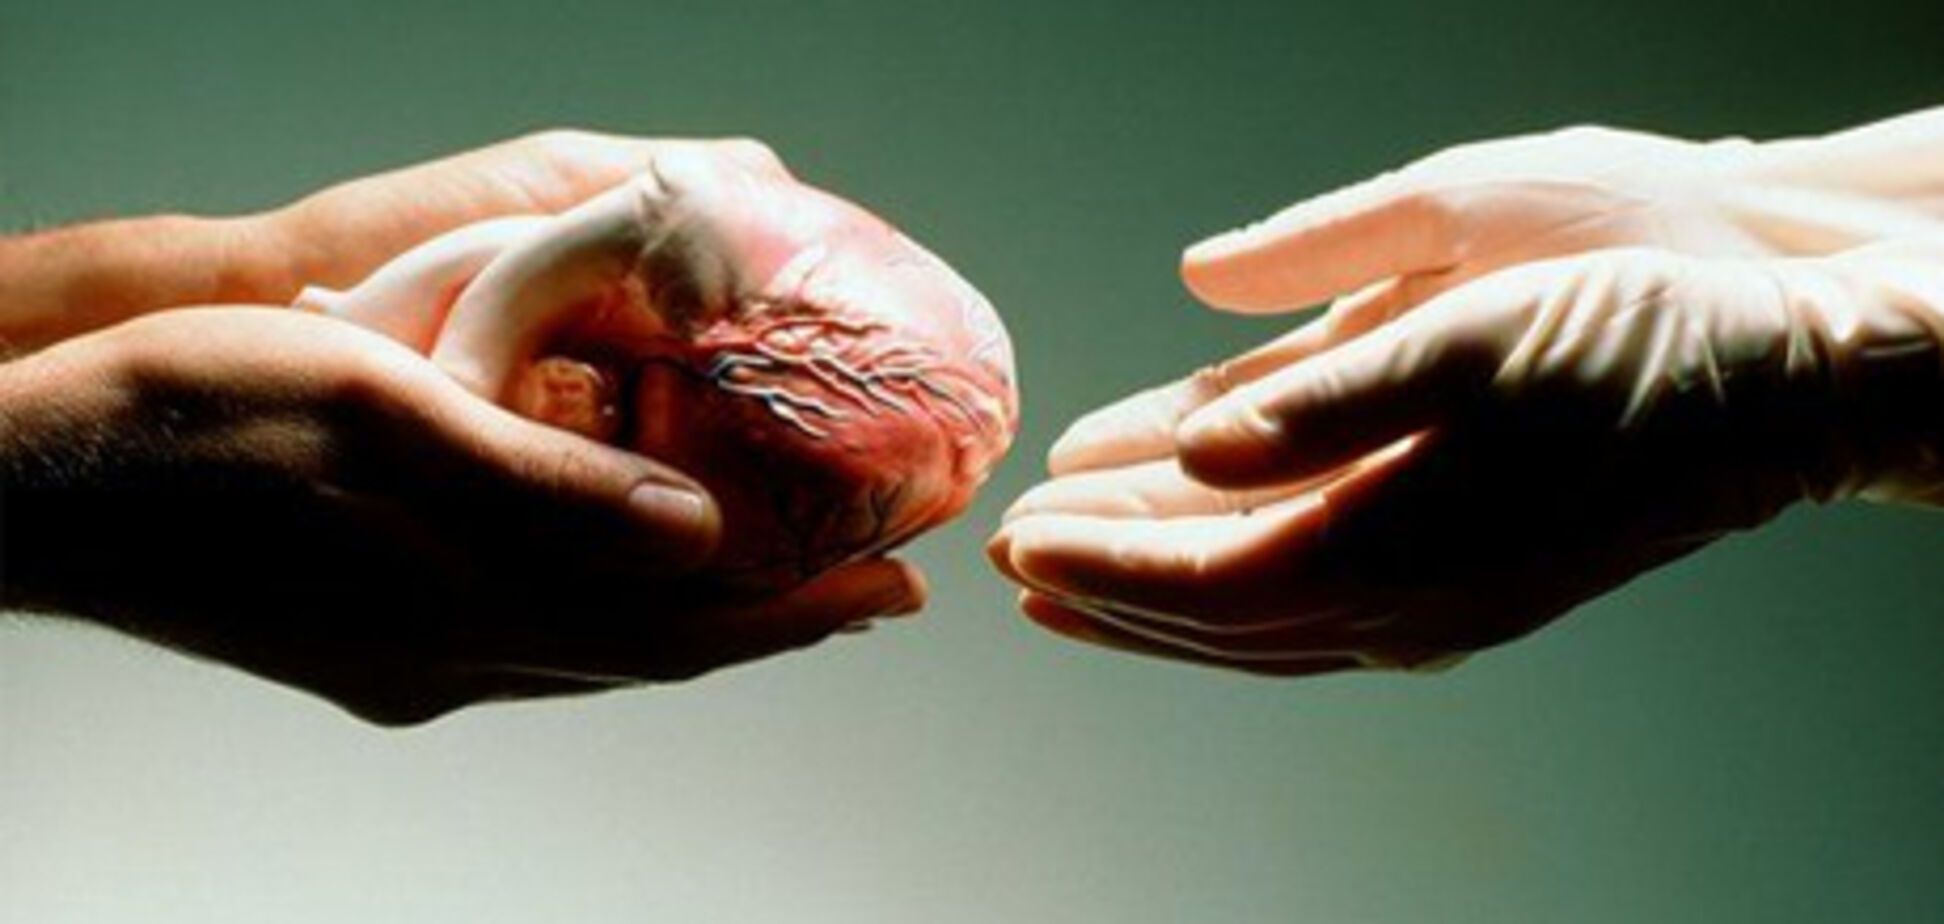 МОЗ підтримав законопроект про трансплантацію органів